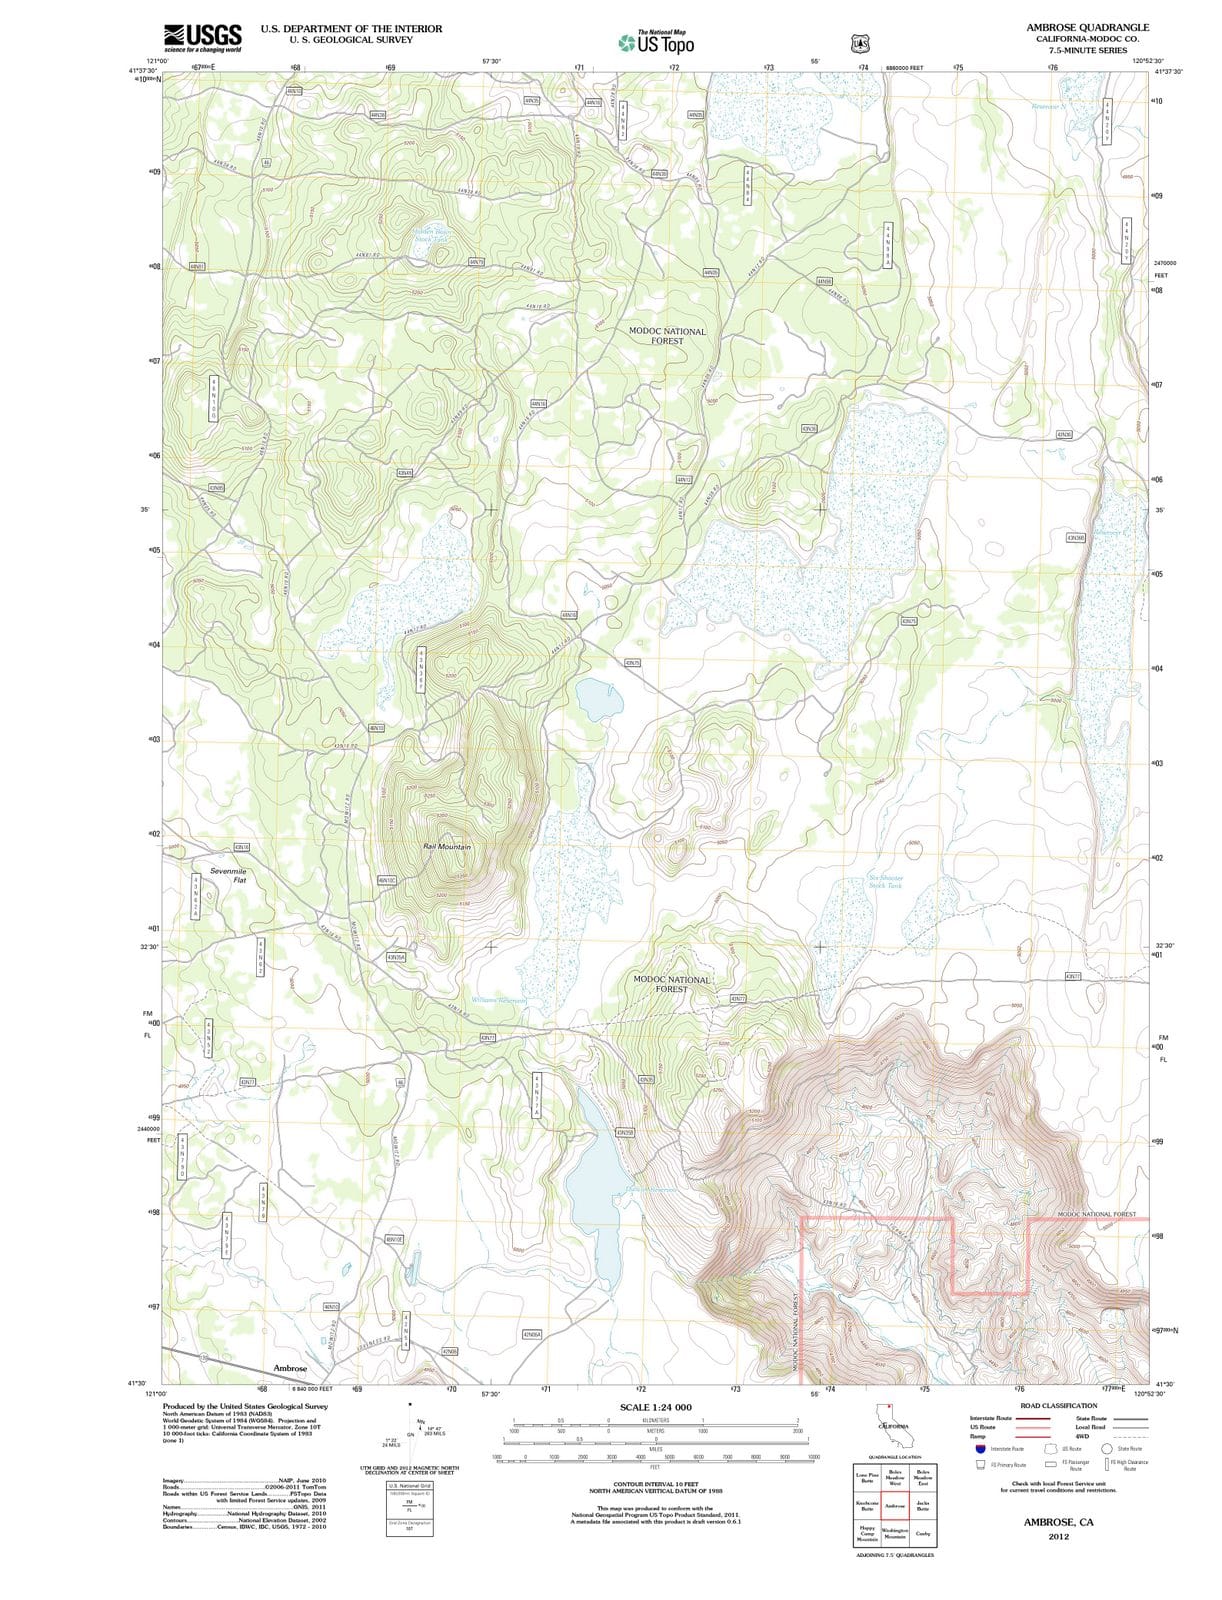 2012 Ambrose, CA - California - USGS Topographic Map